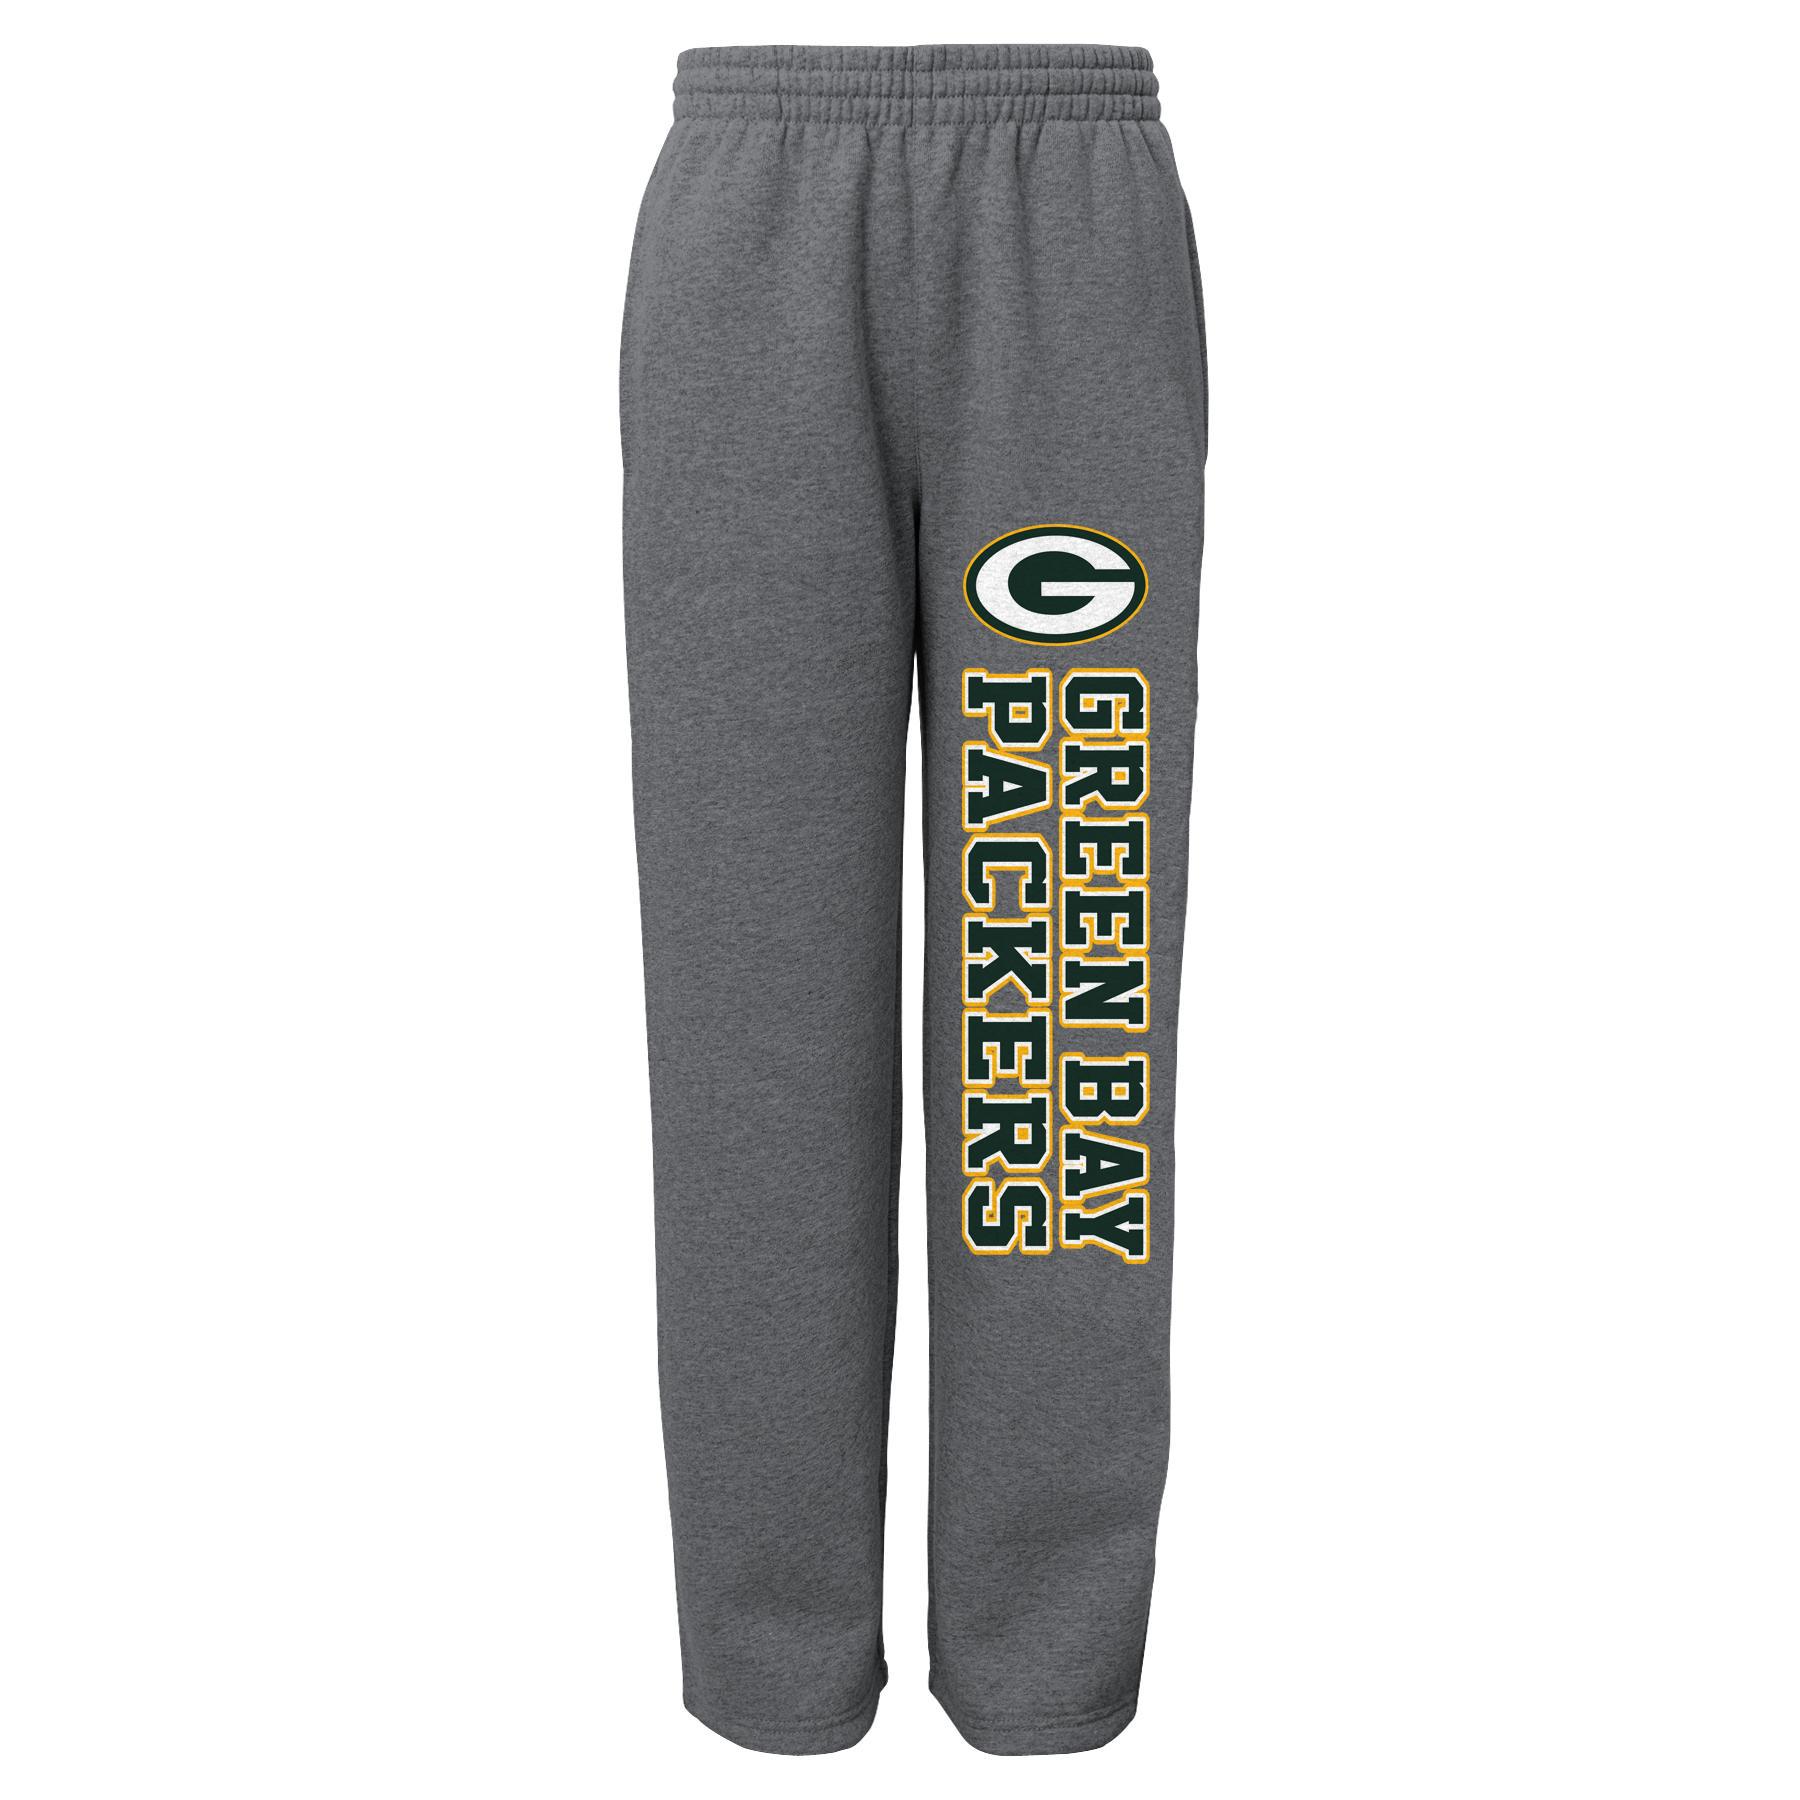 NFL Boys' Fleece Sweatpants - Green Bay Packers